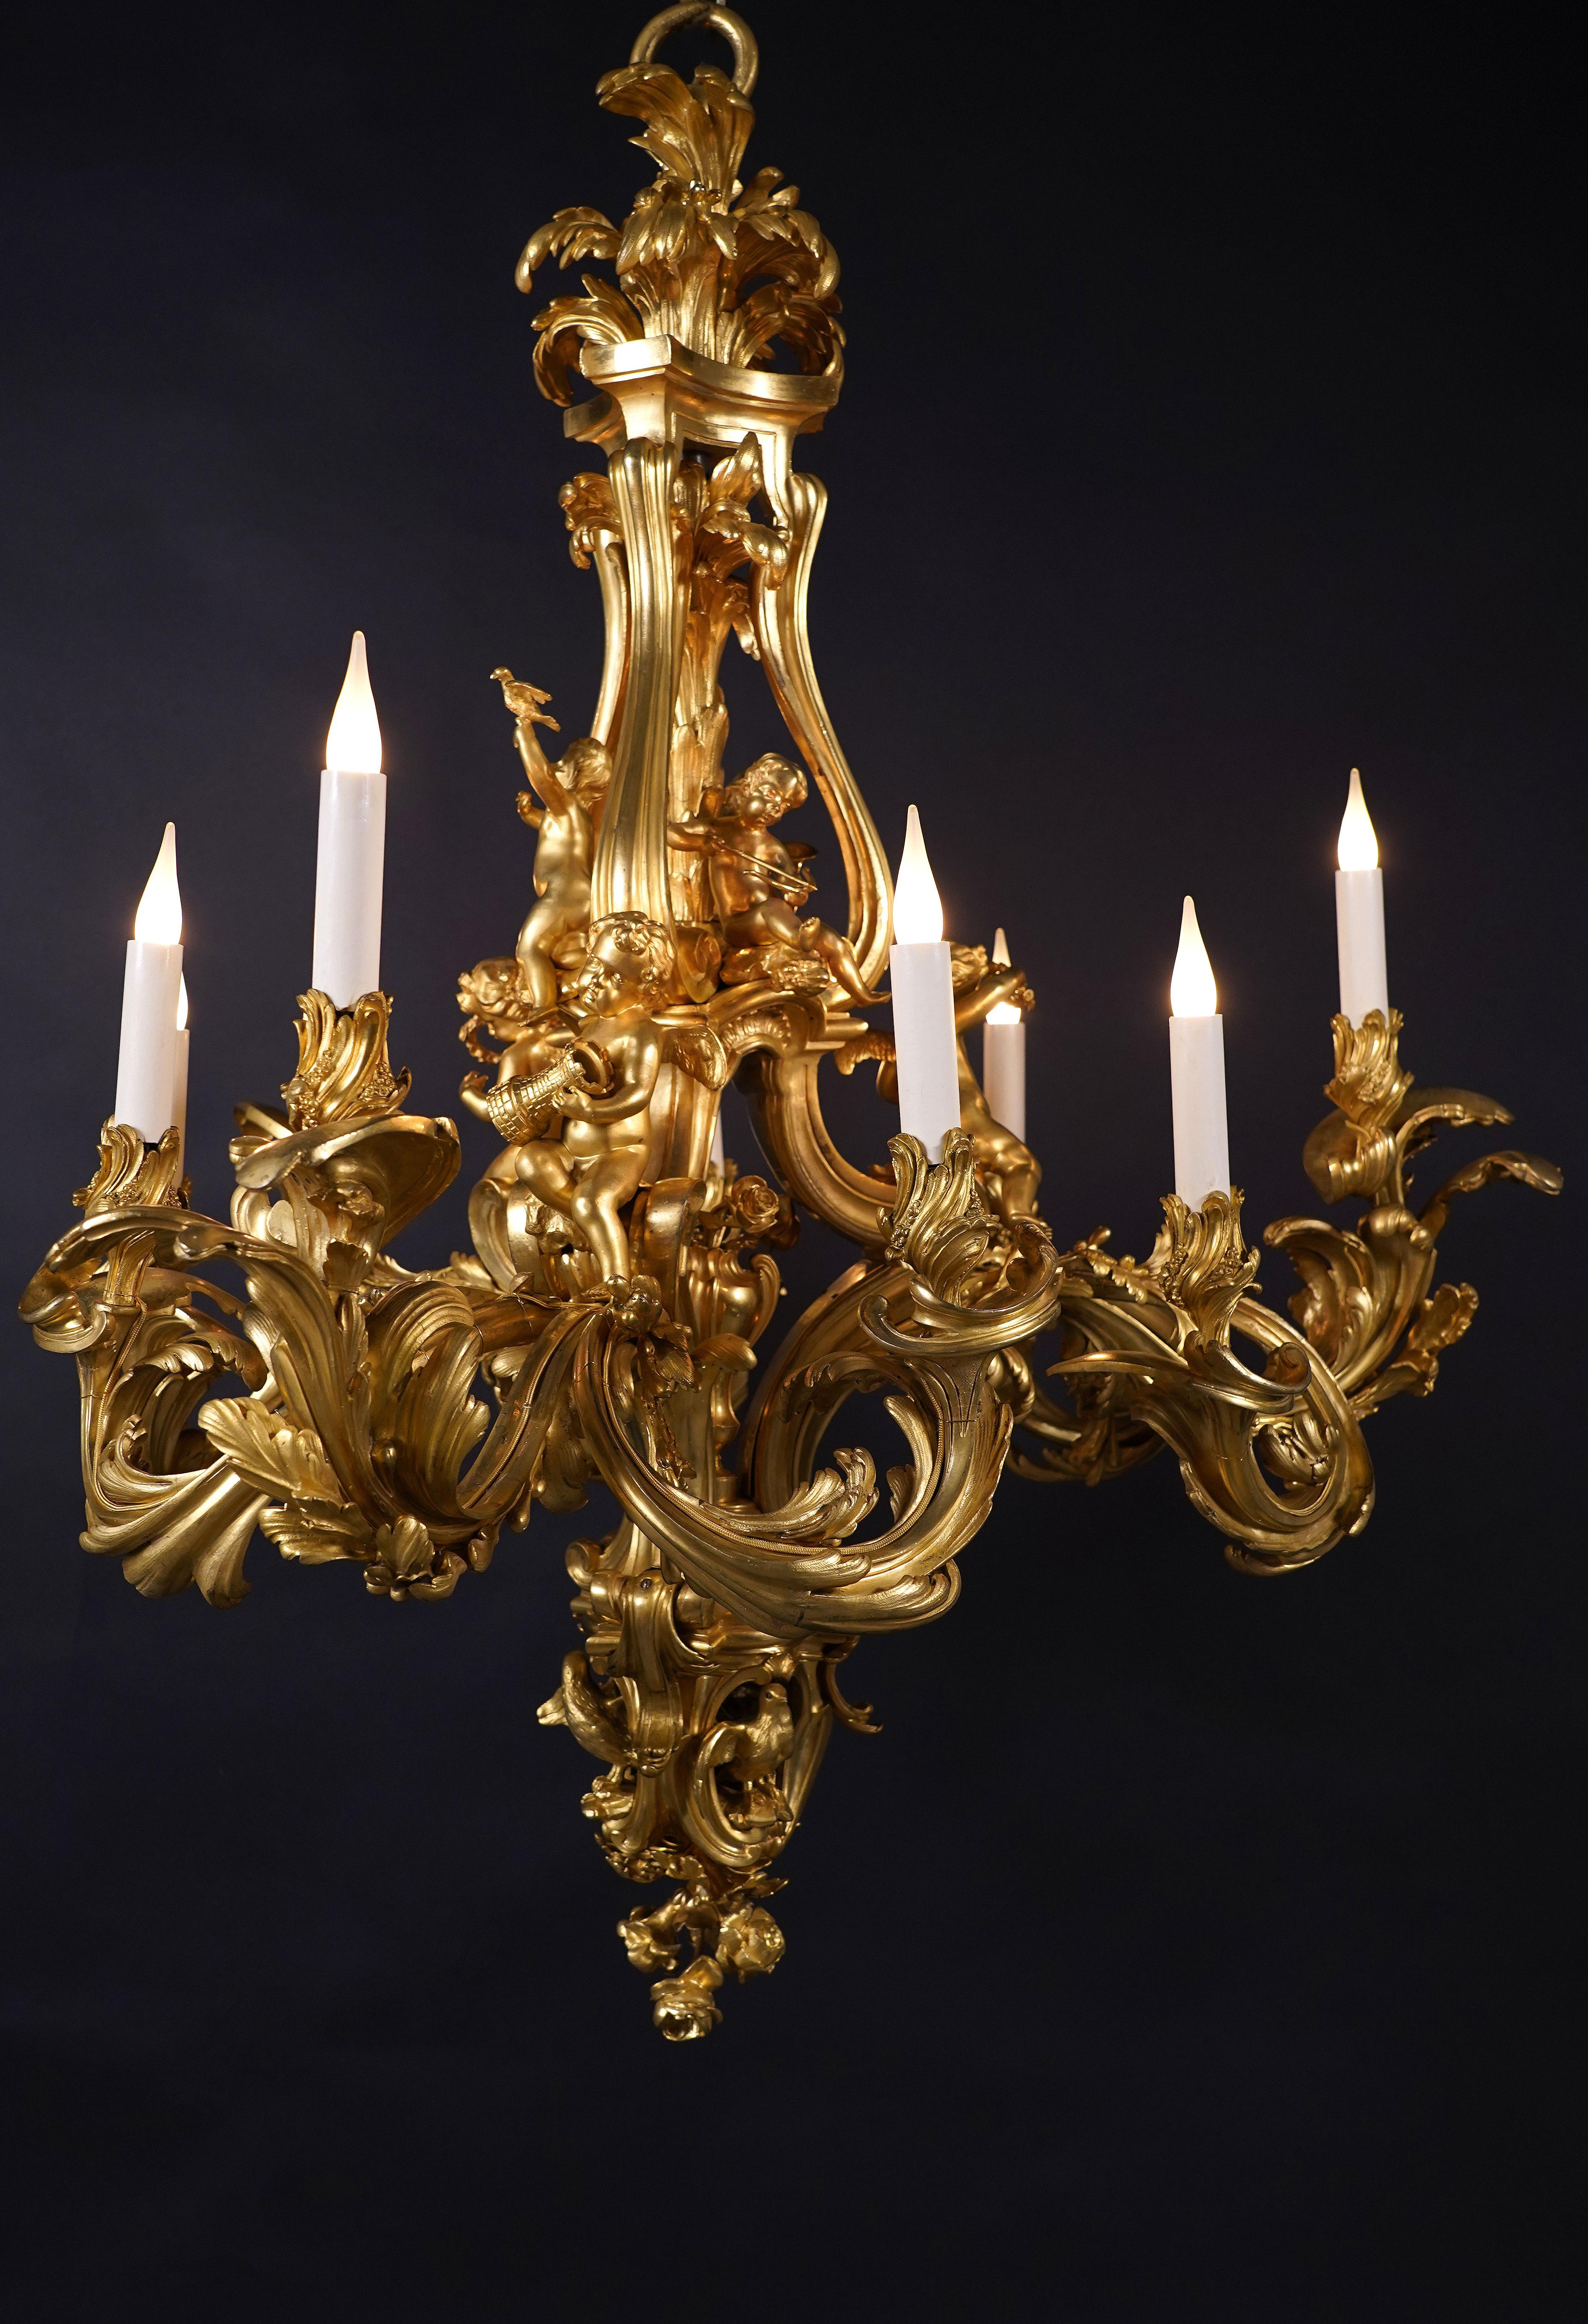 Schöner ziselierter Kronleuchter aus vergoldeter Bronze im Stil Louis XV mit neun Lichtern. Der zentrale Teil des Kronleuchters besteht aus drei Spiralen und ist mit einer blühenden Vase und Amoretten verziert.
Zwei von ihnen halten Lorbeerkränze,